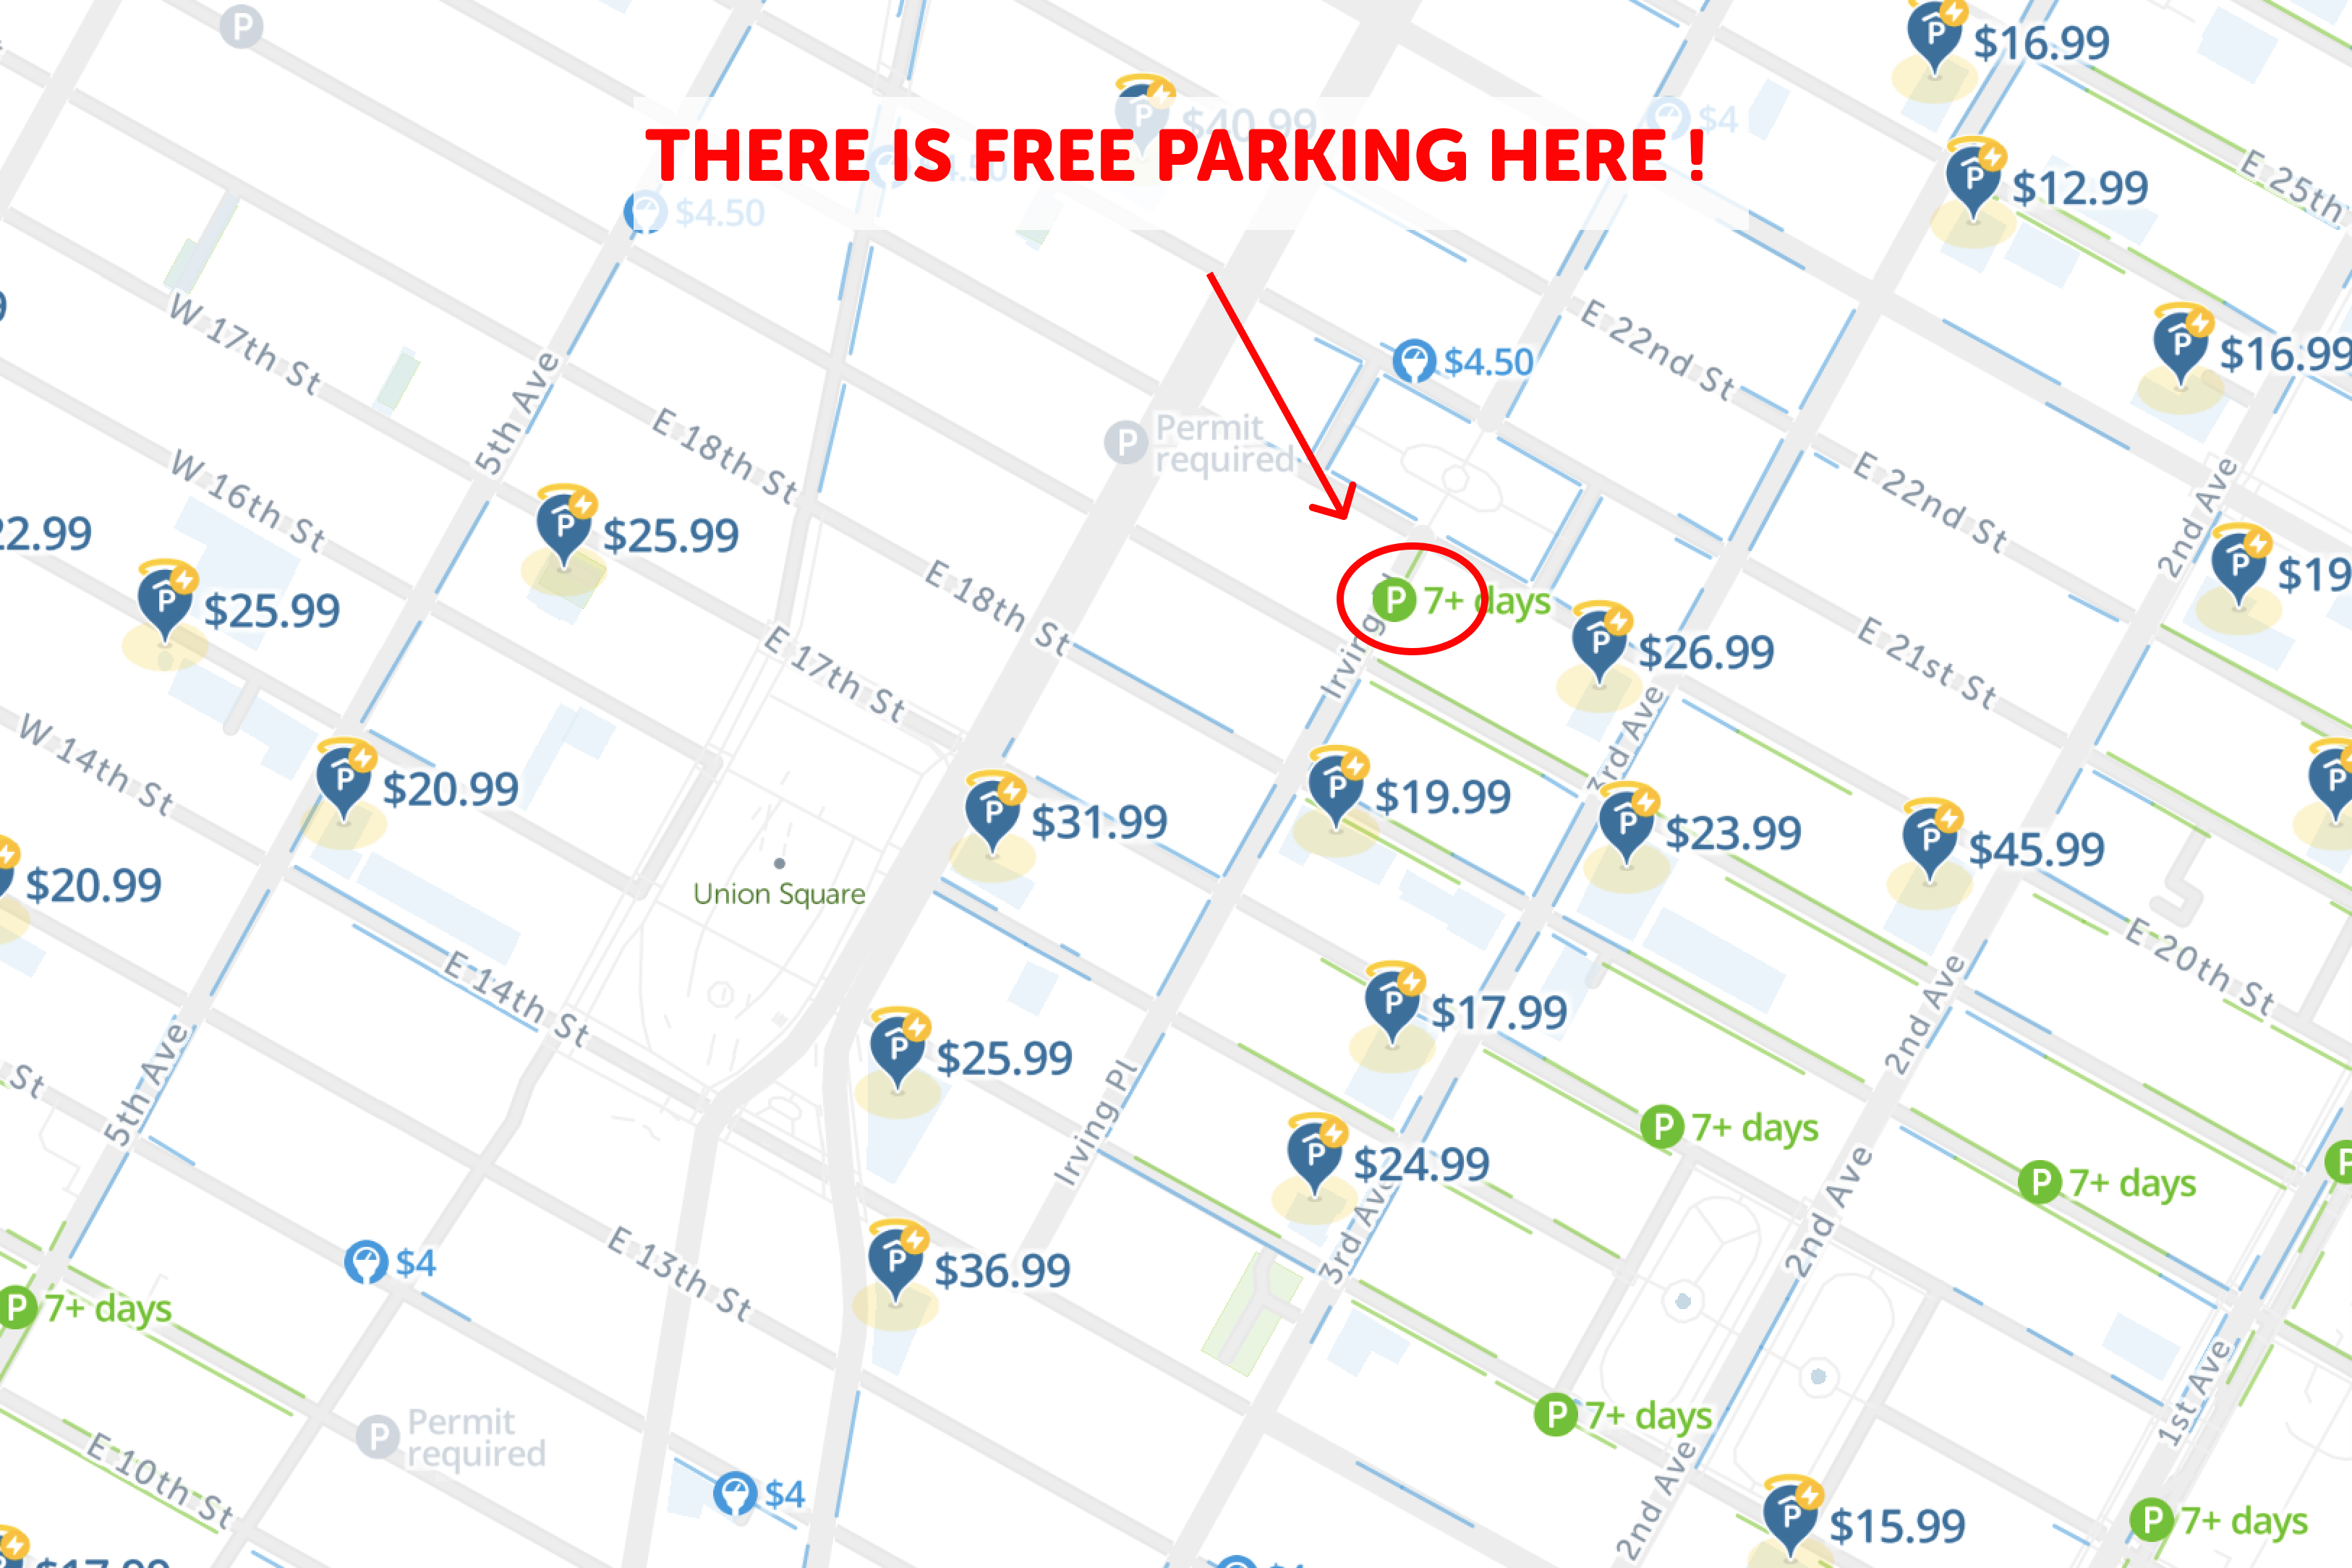 2020 NYC Free Parking Map SpotAngels